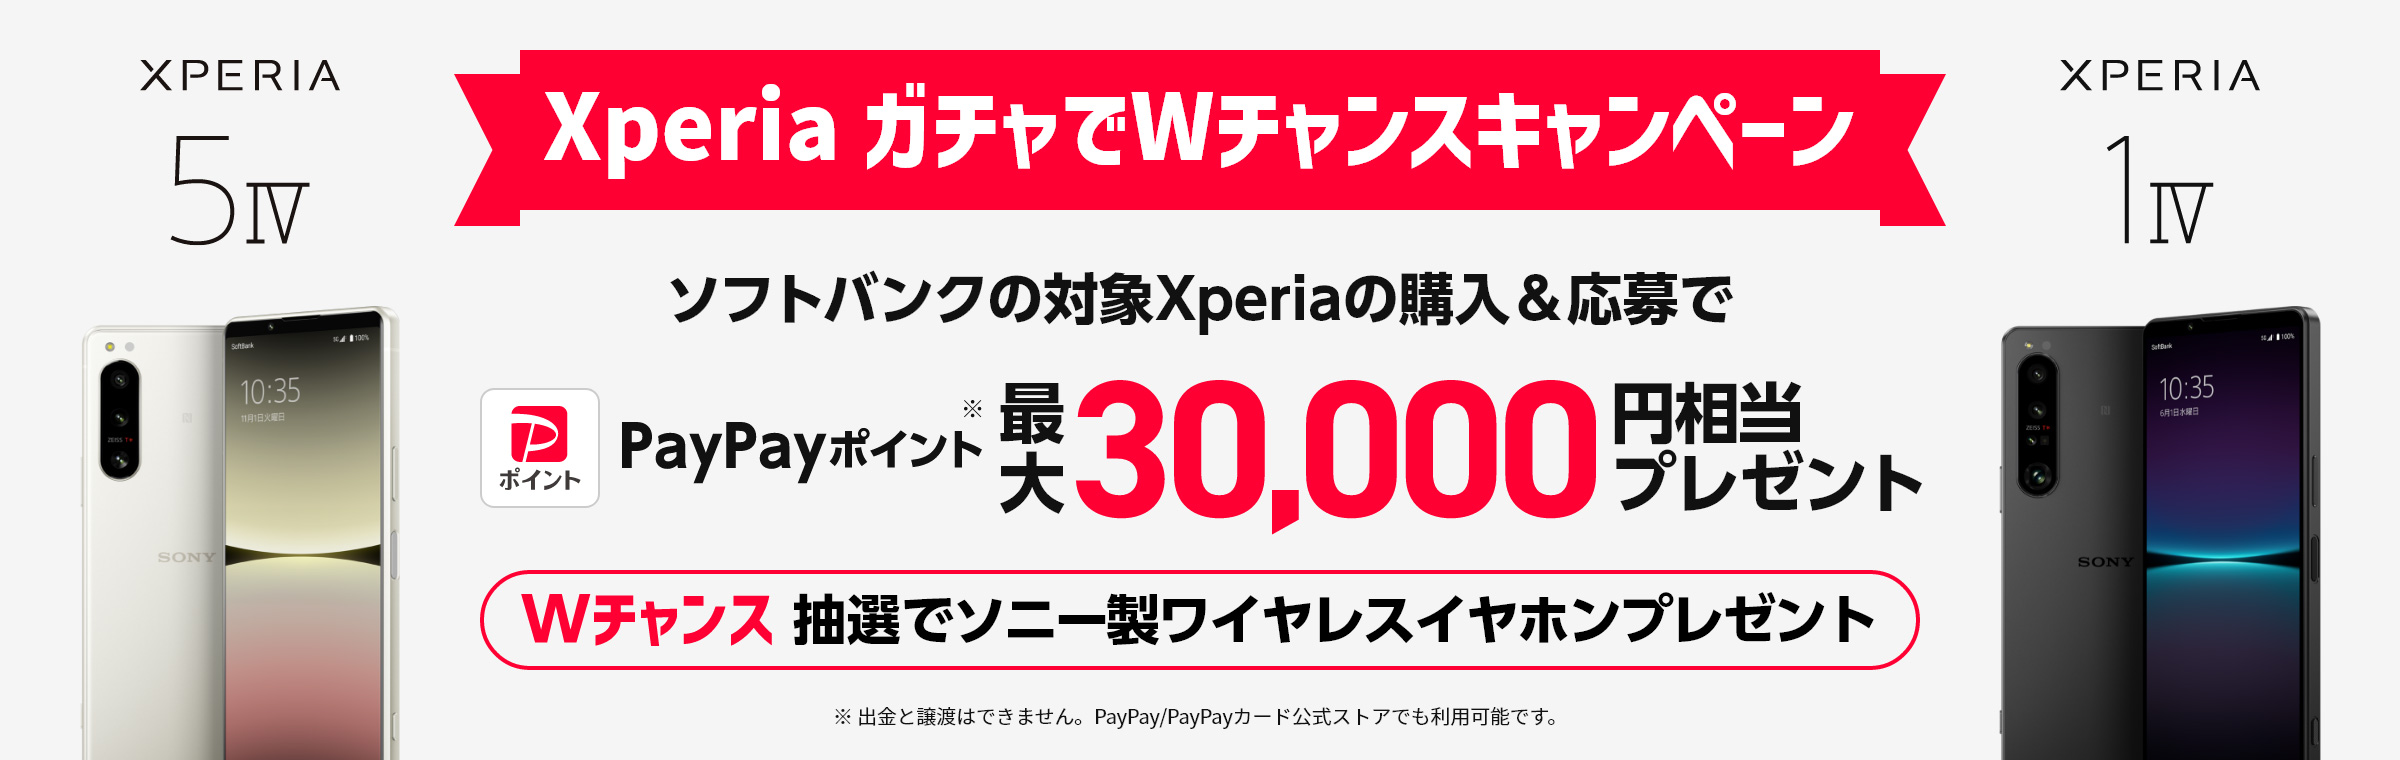 Xperia ガチャでWチャンスキャンペーン ソフトバンクの対象Xperiaの購入＆応募でPayPayポイント*最大30,000円相当プレゼント Wチャンス：抽選でソニー製ワイヤレスイヤホンプレゼント *出金と譲渡はできません。PayPay/PayPayカード公式ストアでも利用可能です。